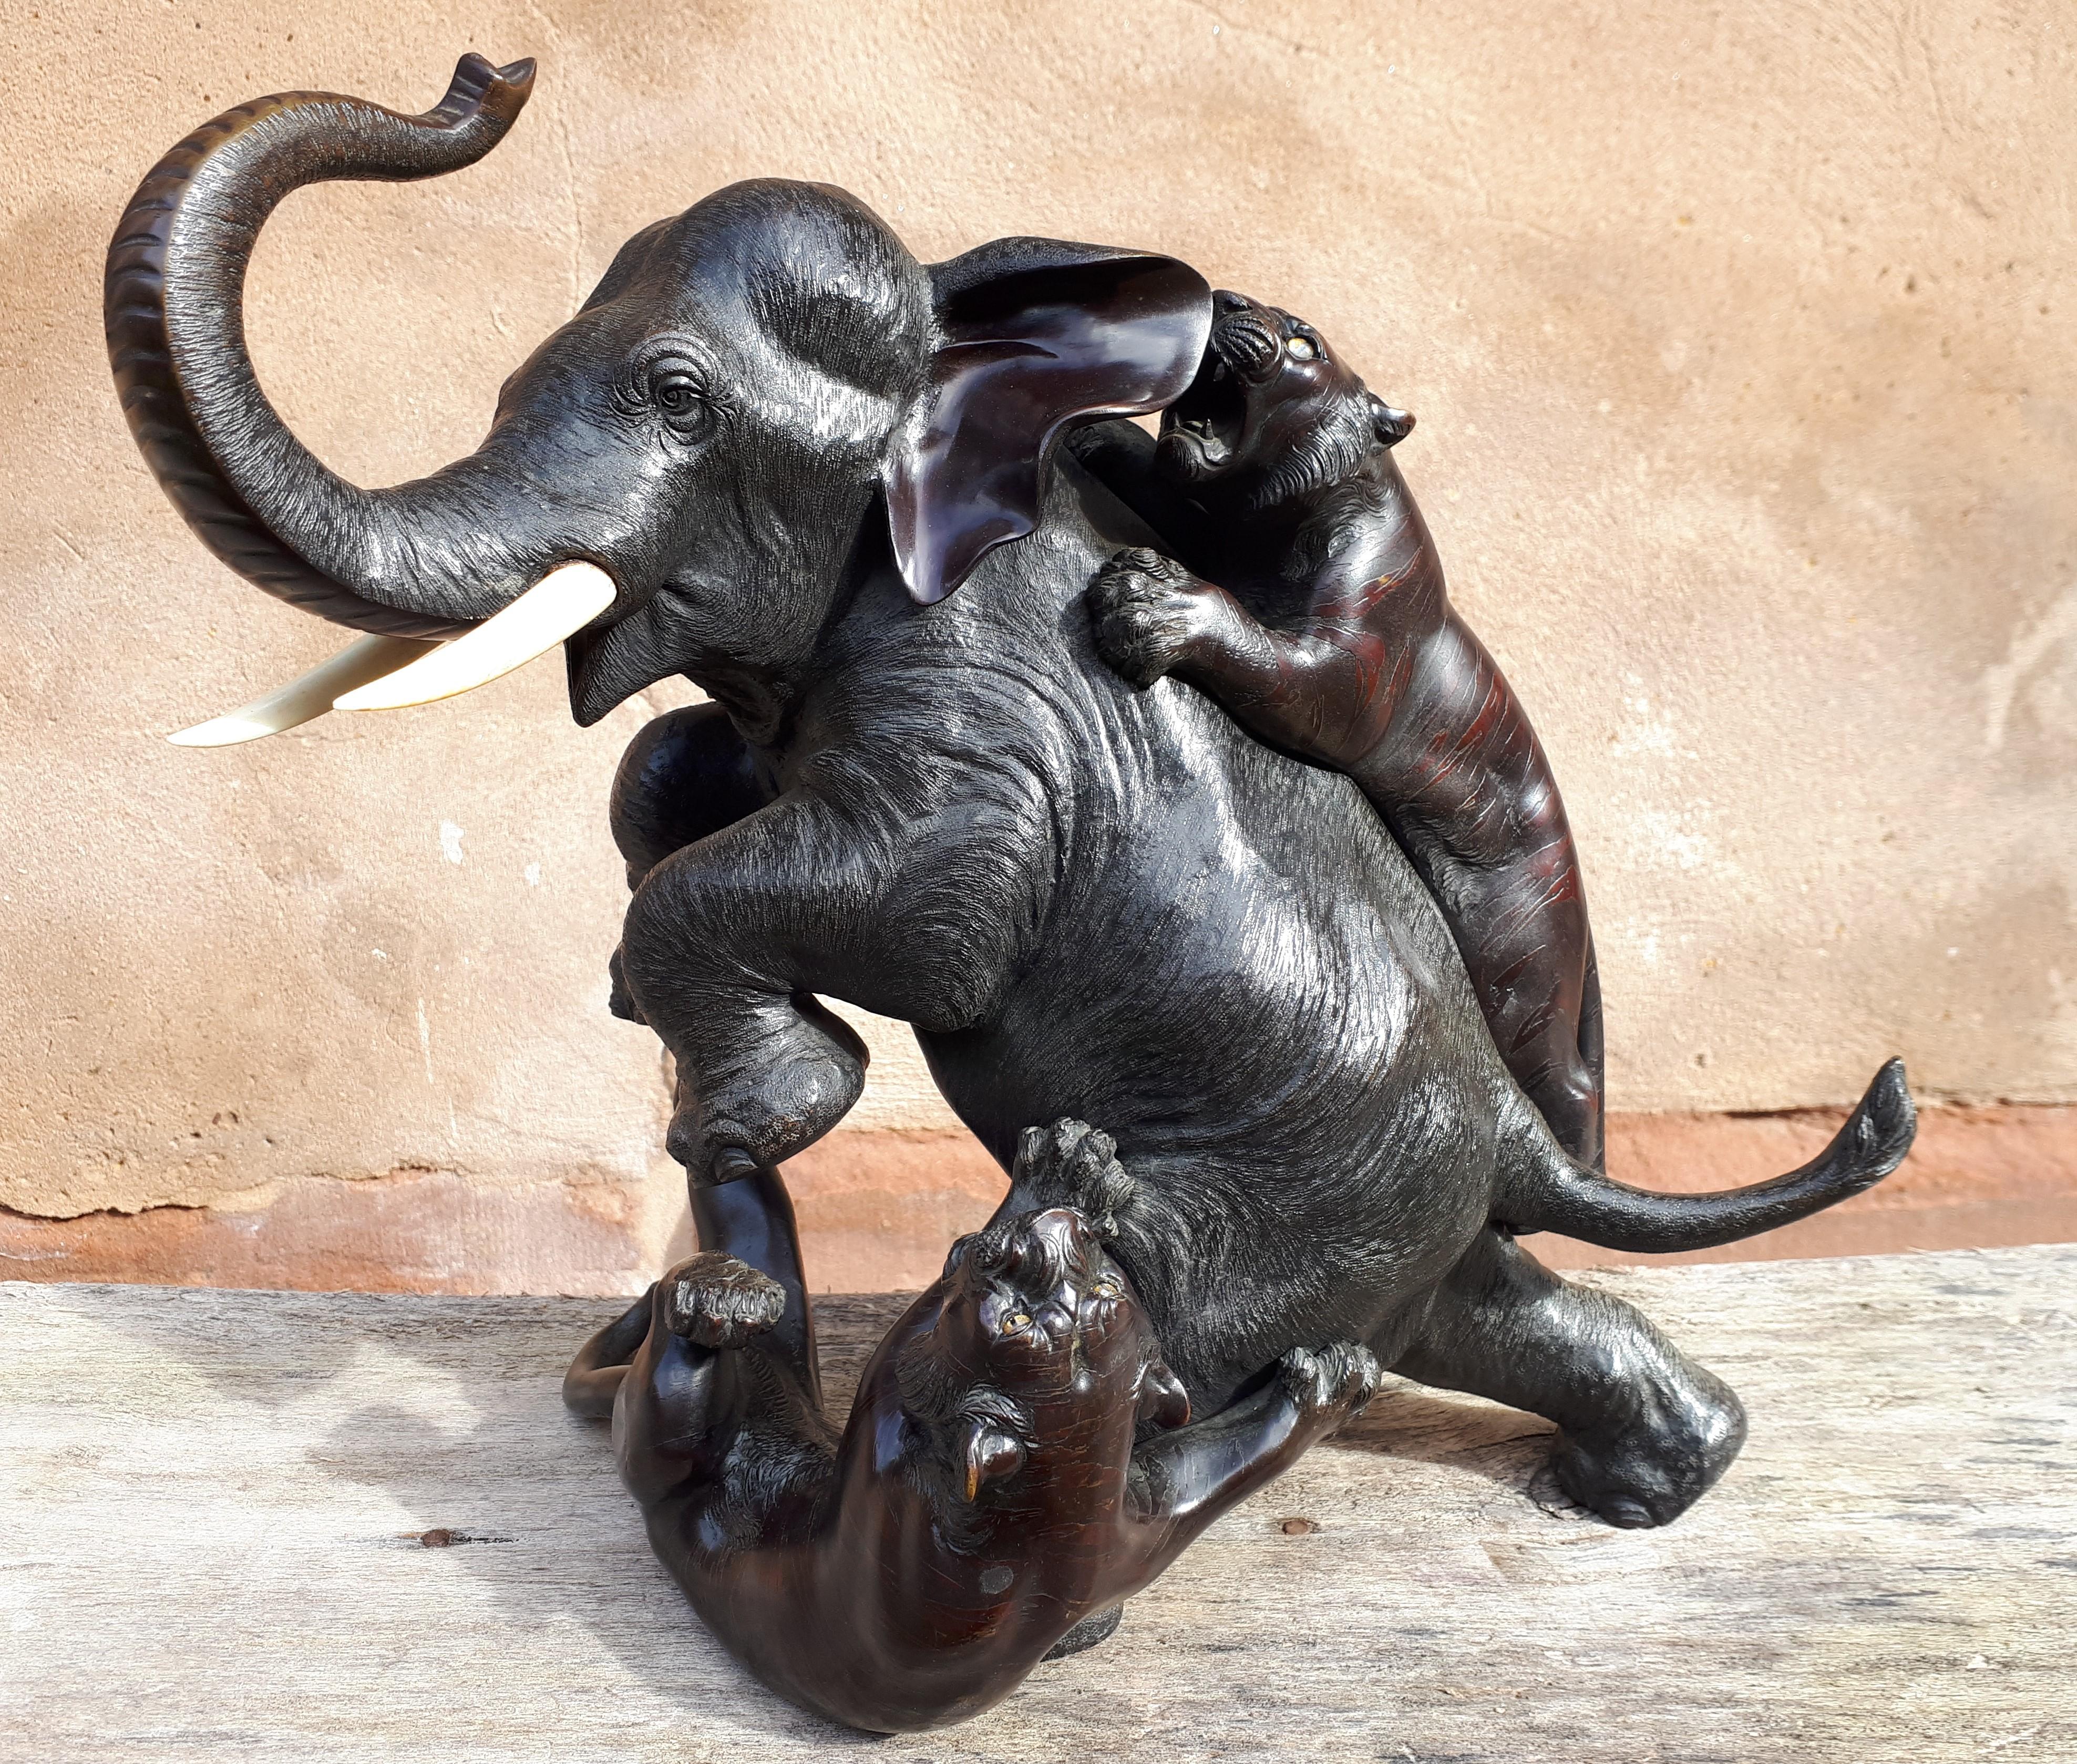 Wunderschöne Komposition für diesen Okimono aus Bronze mit doppelter Patina, der einen Elefanten darstellt, der von zwei Tigern angegriffen wird.
Die Häute der verschiedenen Tiere sind sehr detailliert und mit unterschiedlichen Techniken